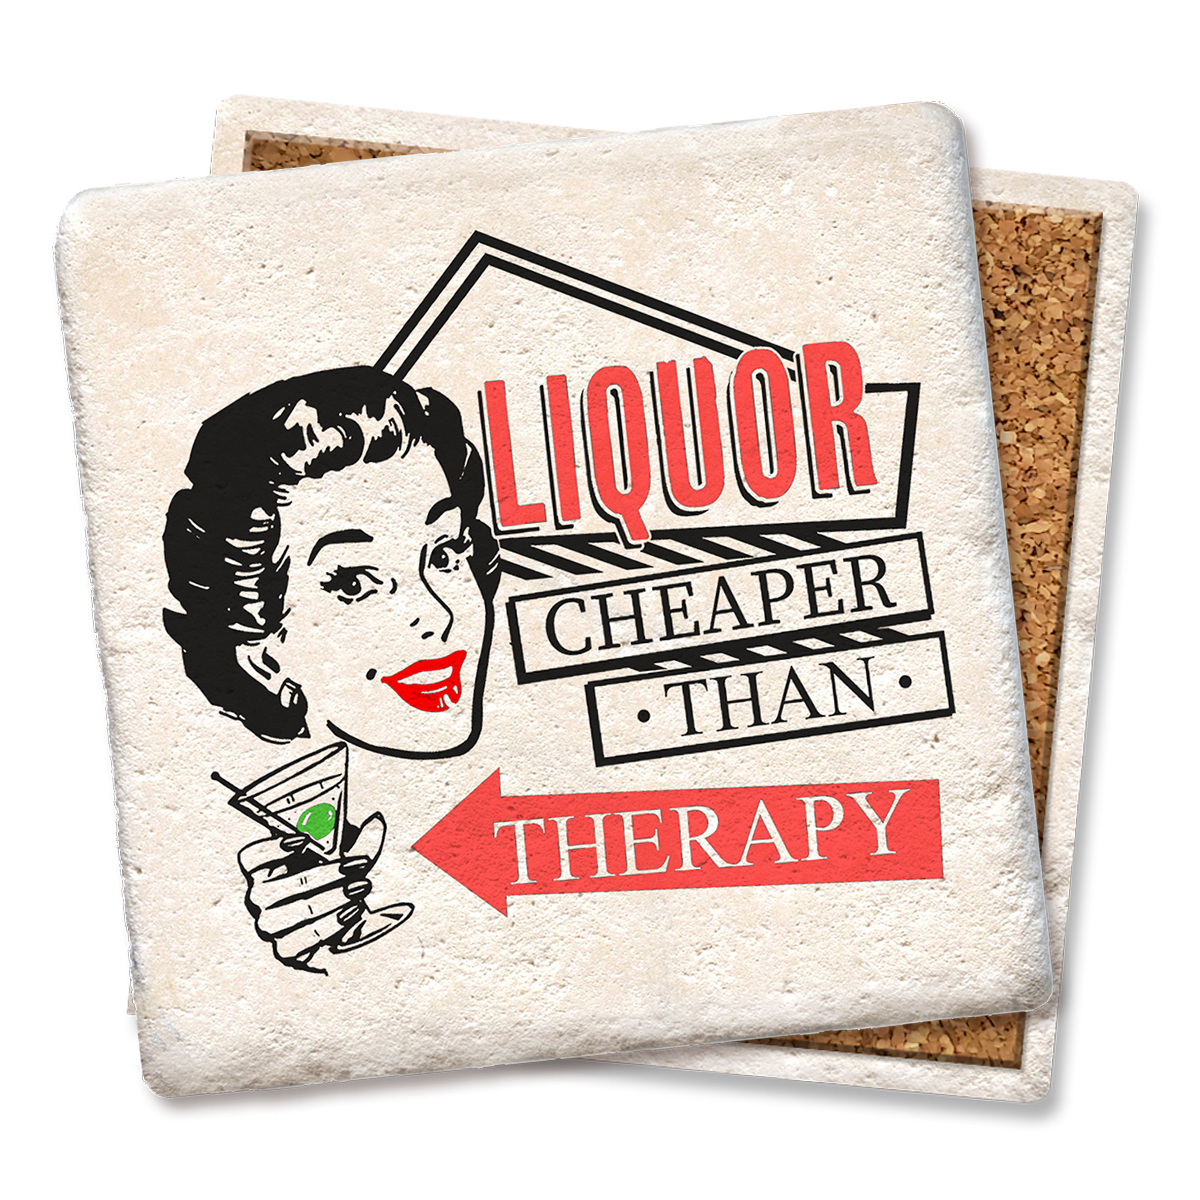 Liquor Cheaper Than Therapy Coaster